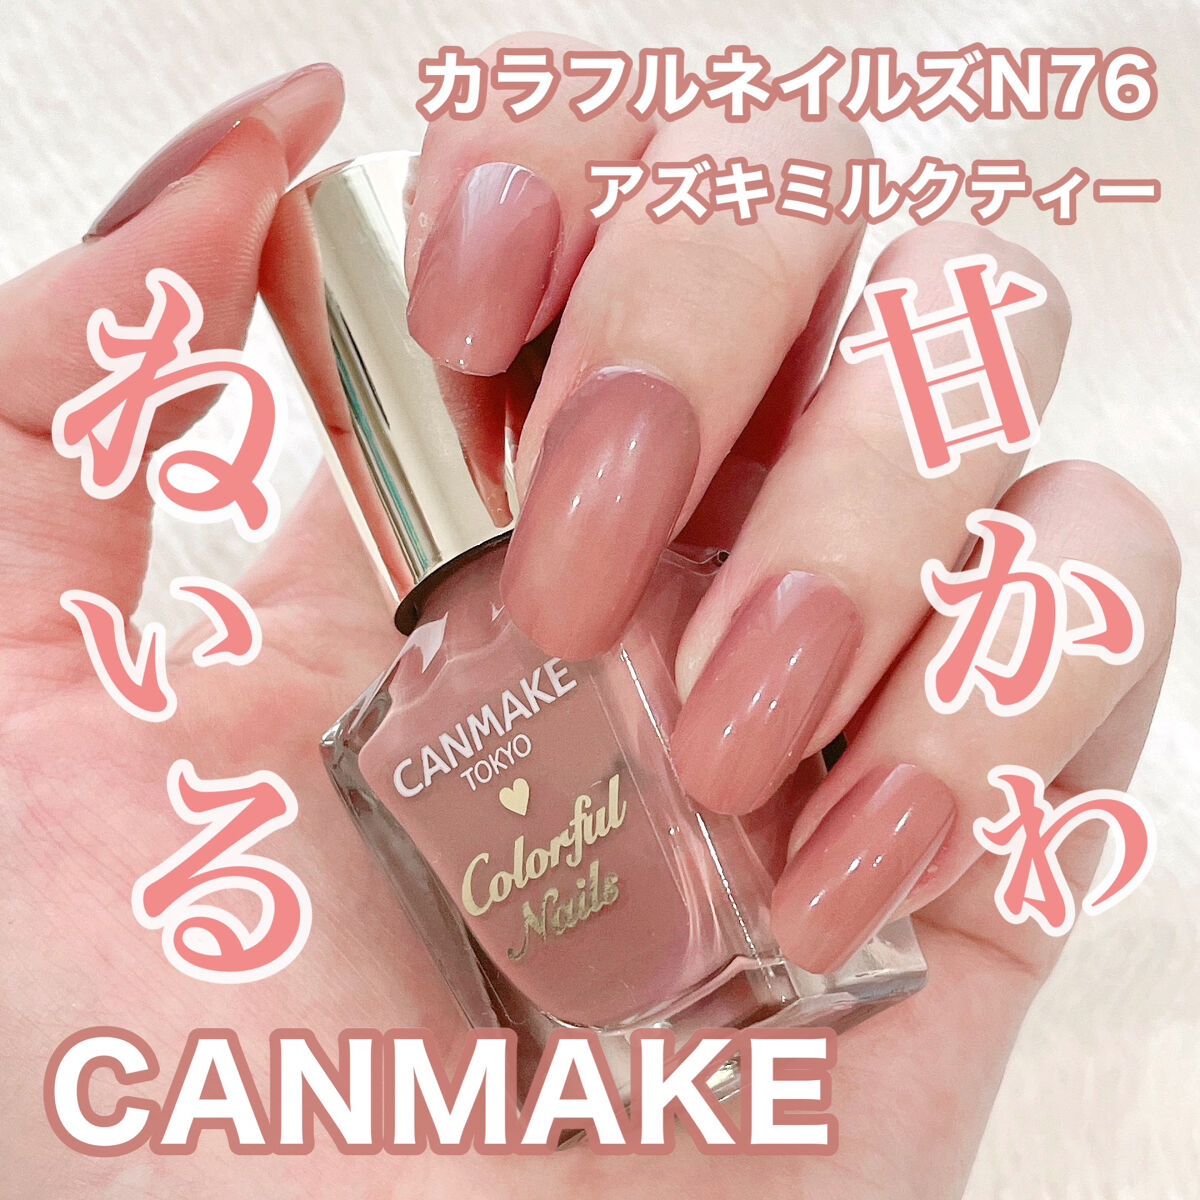 CANMAKE カラフルネイルズ まとめ売り - 通販 - guianegro.com.br